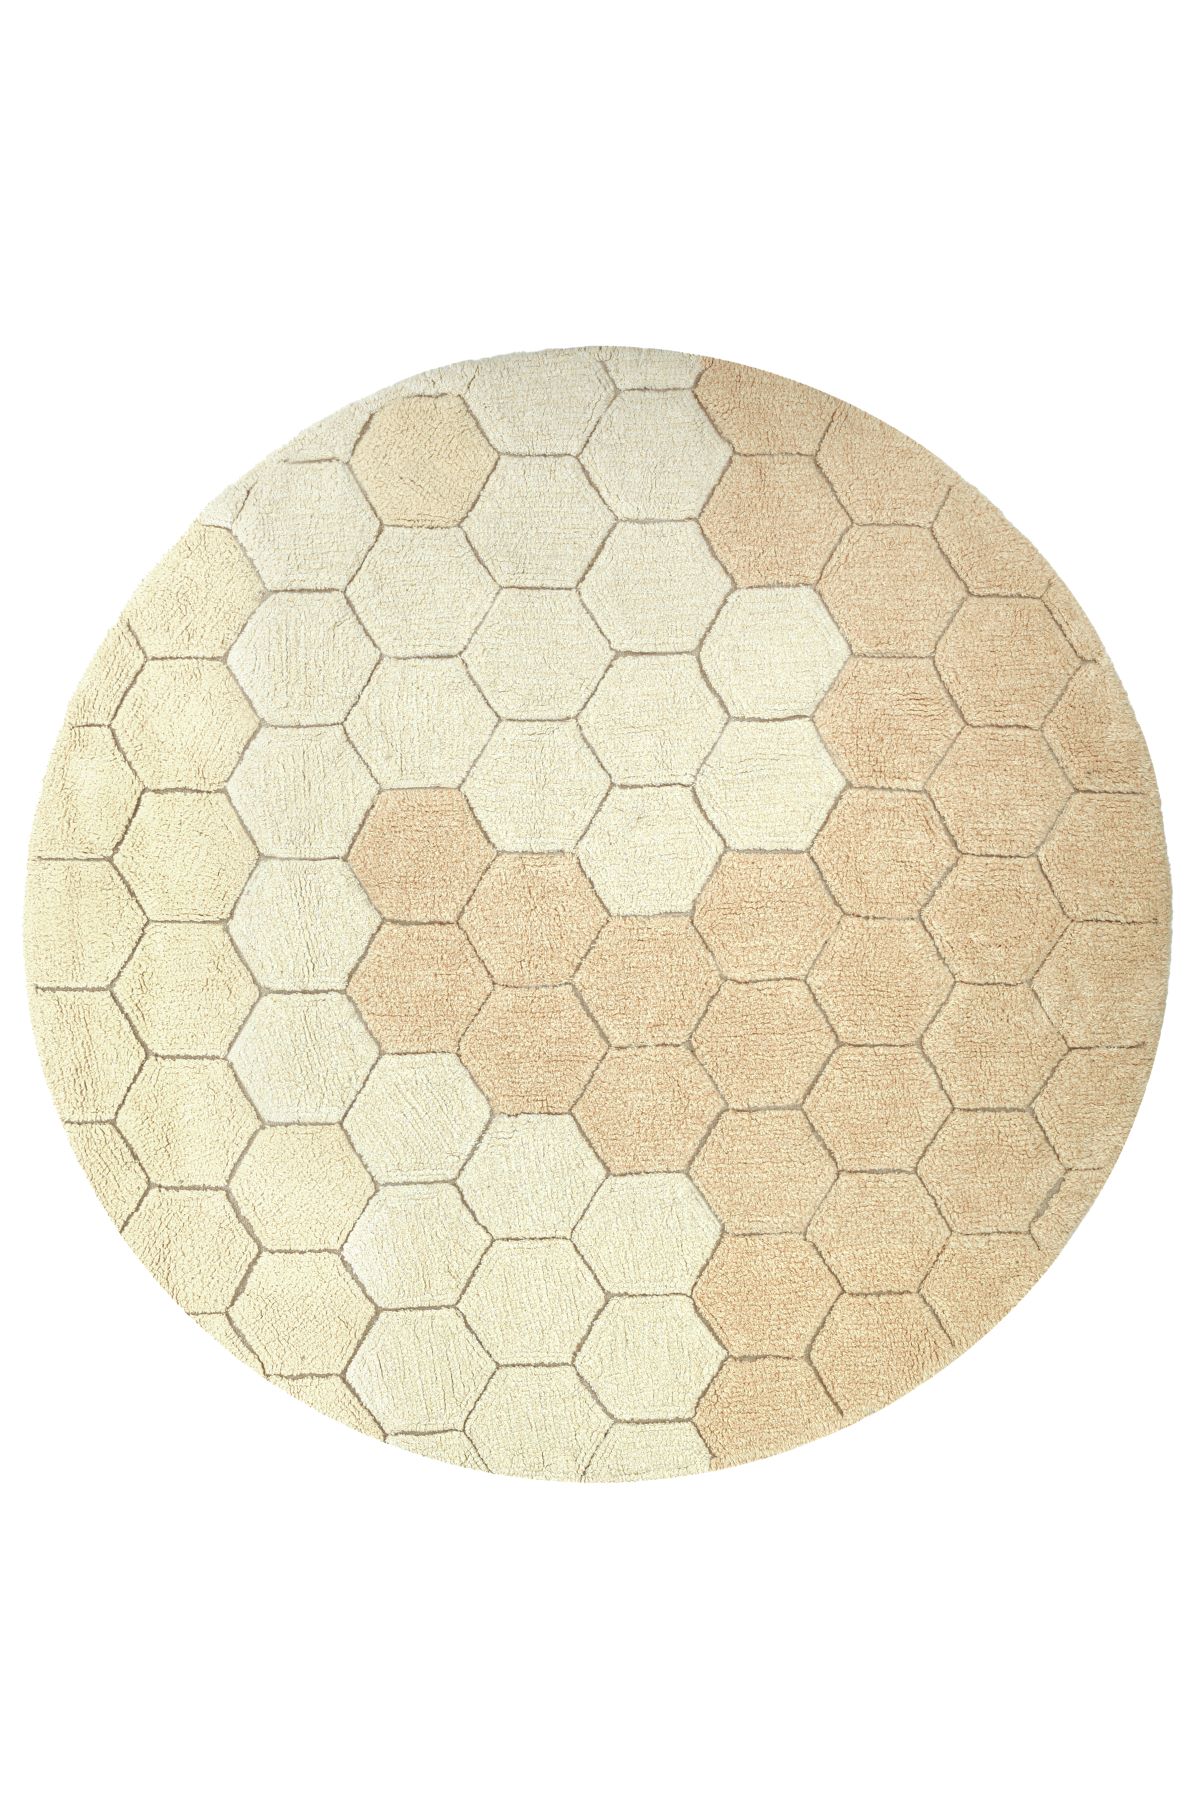 lorena-canals-rug-honeycomb-golden